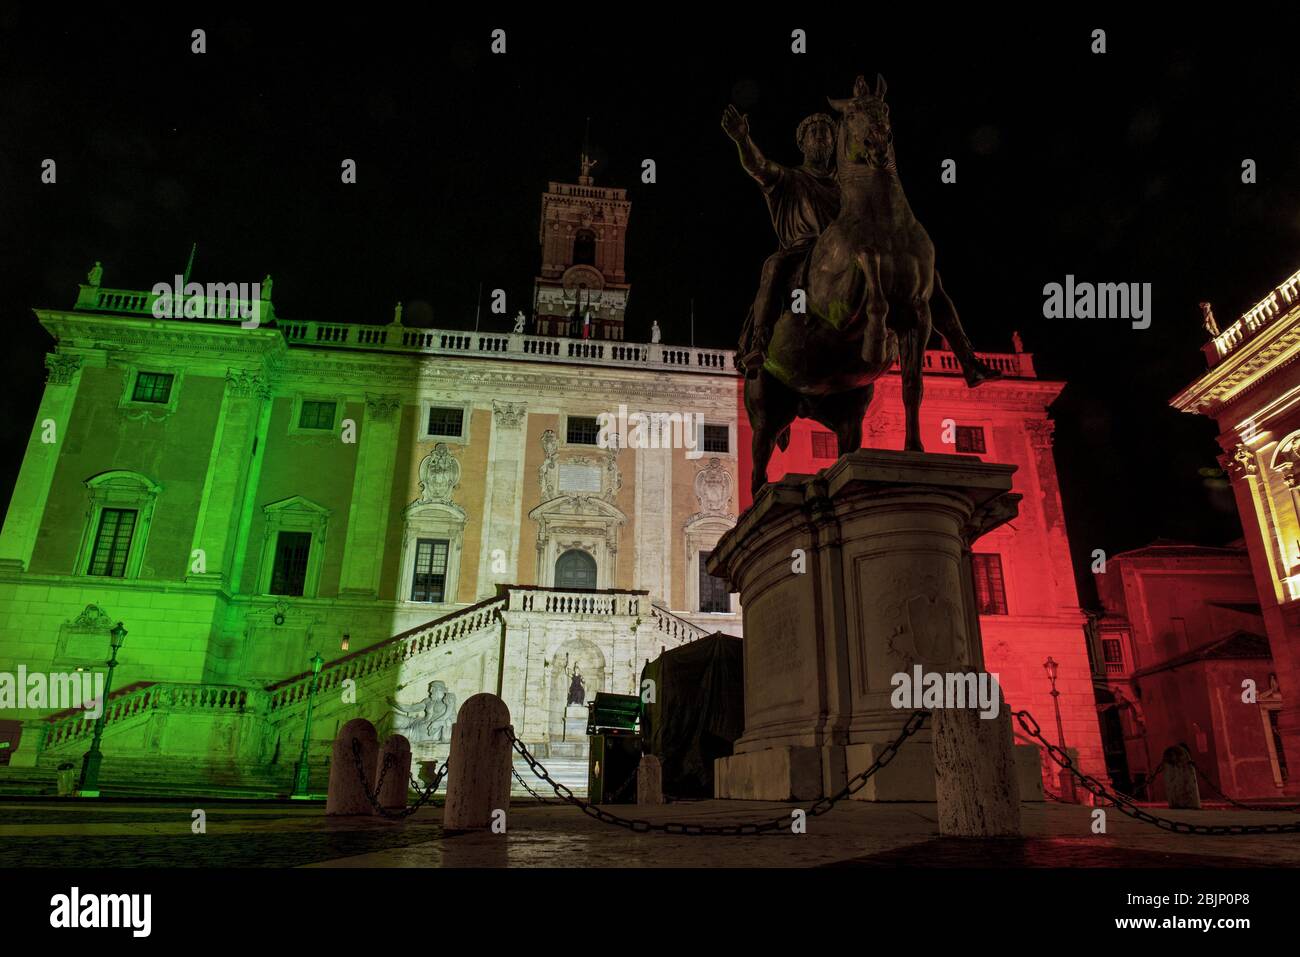 Italia, Roma, 24 aprile 2020 : la facciata del Municipio del Campidoglio illuminata dai colori della bandiera italiana durante l'emergenza del 19 (Coronavirus). Foto Fabi Foto Stock